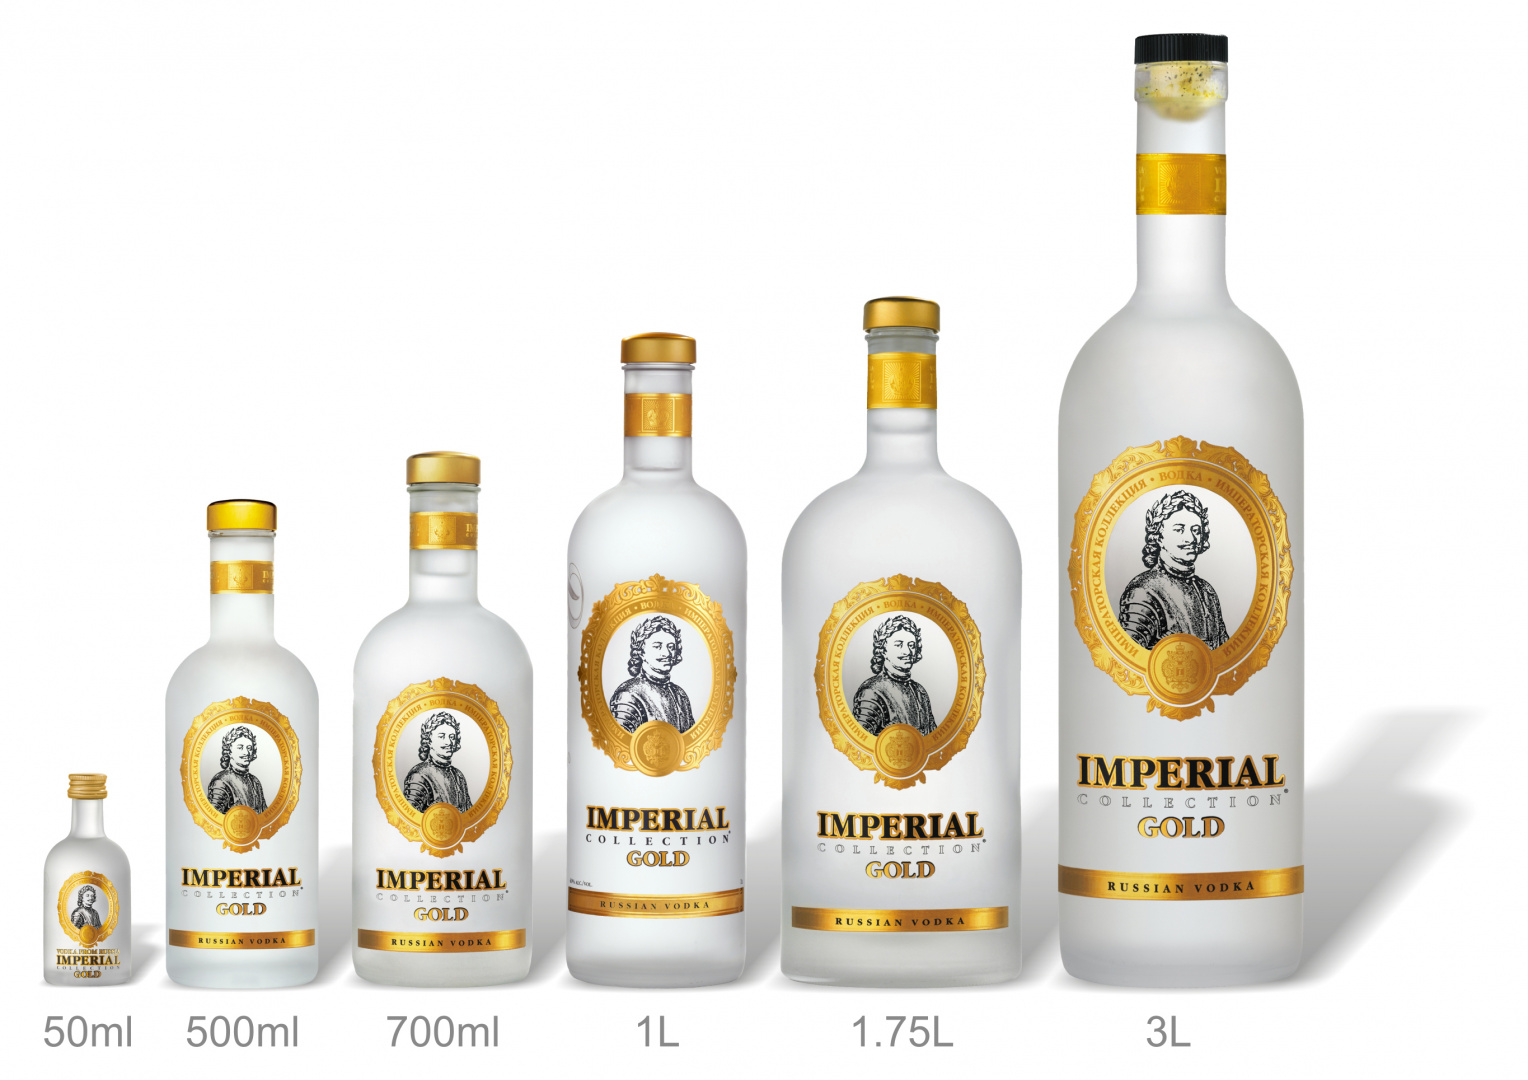 Vodka impérial collection gold 50cl - Vodka Russe - Oeuf de Fabergé  spécialiste des Produits Russe d' exception.